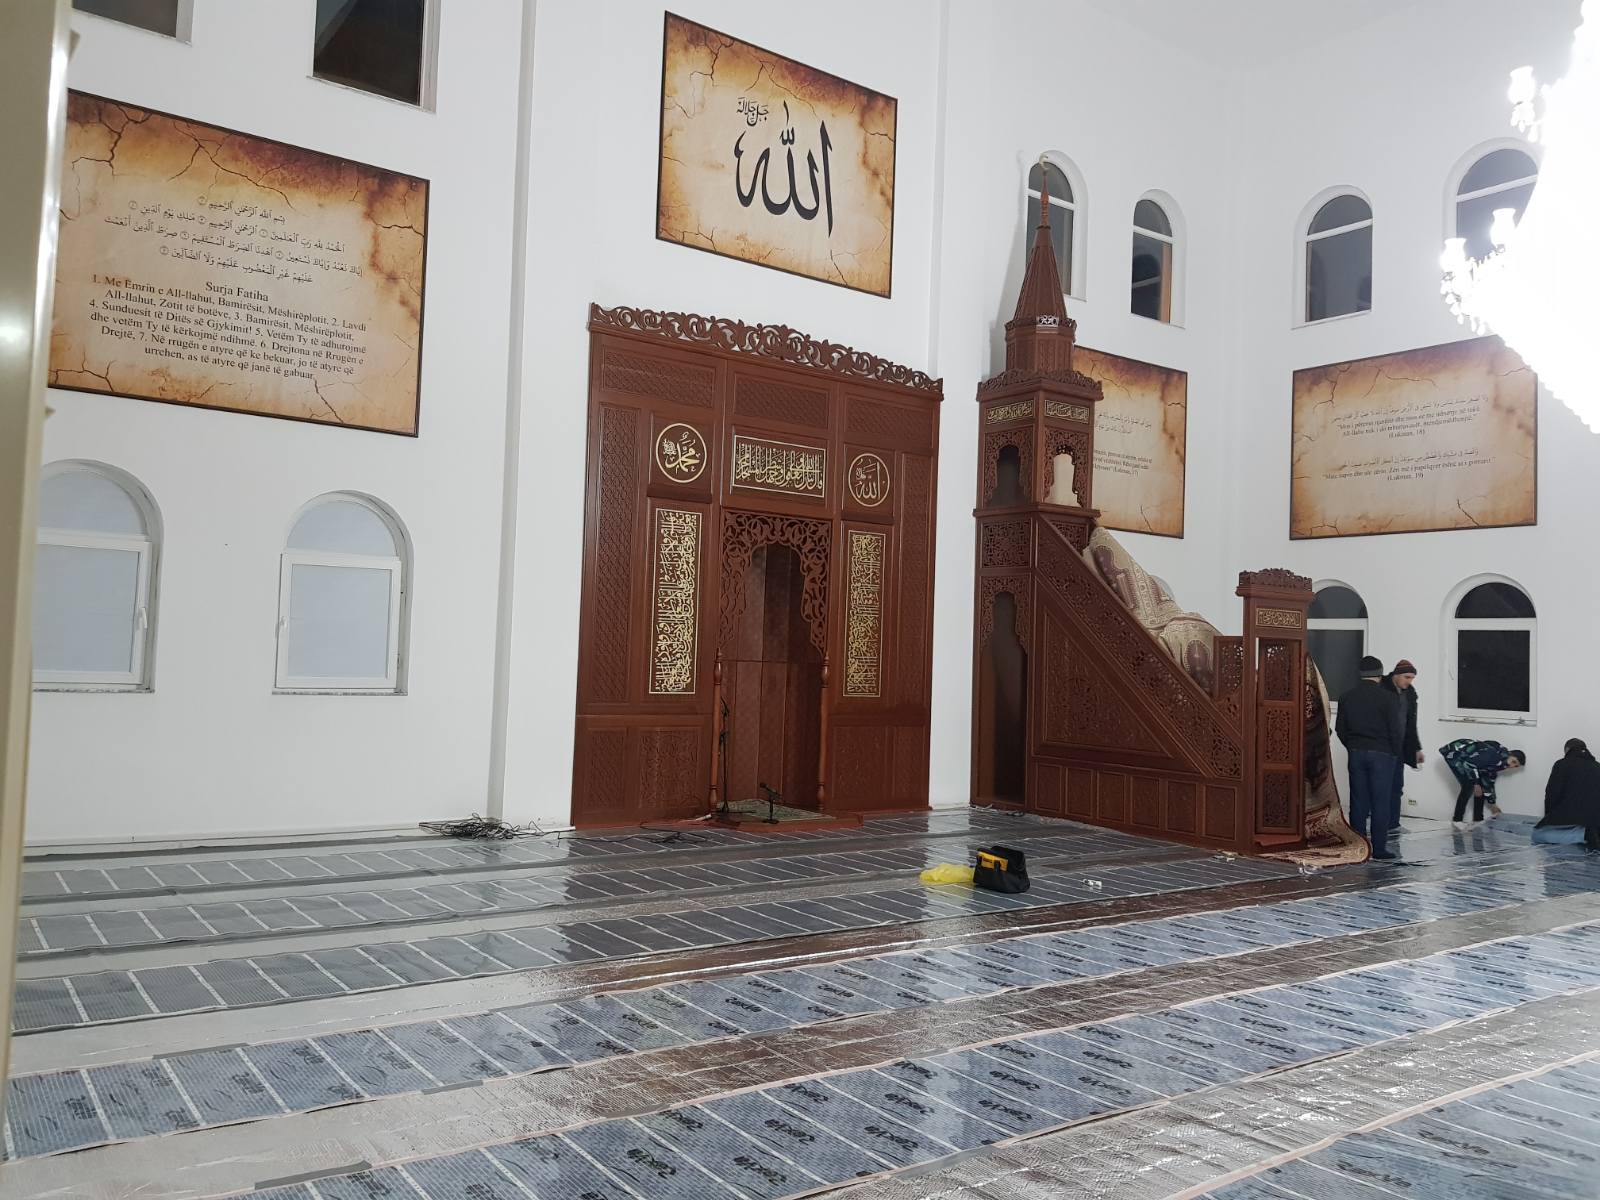 Donacion për xhaminë e Sahat Kullës – Dibër